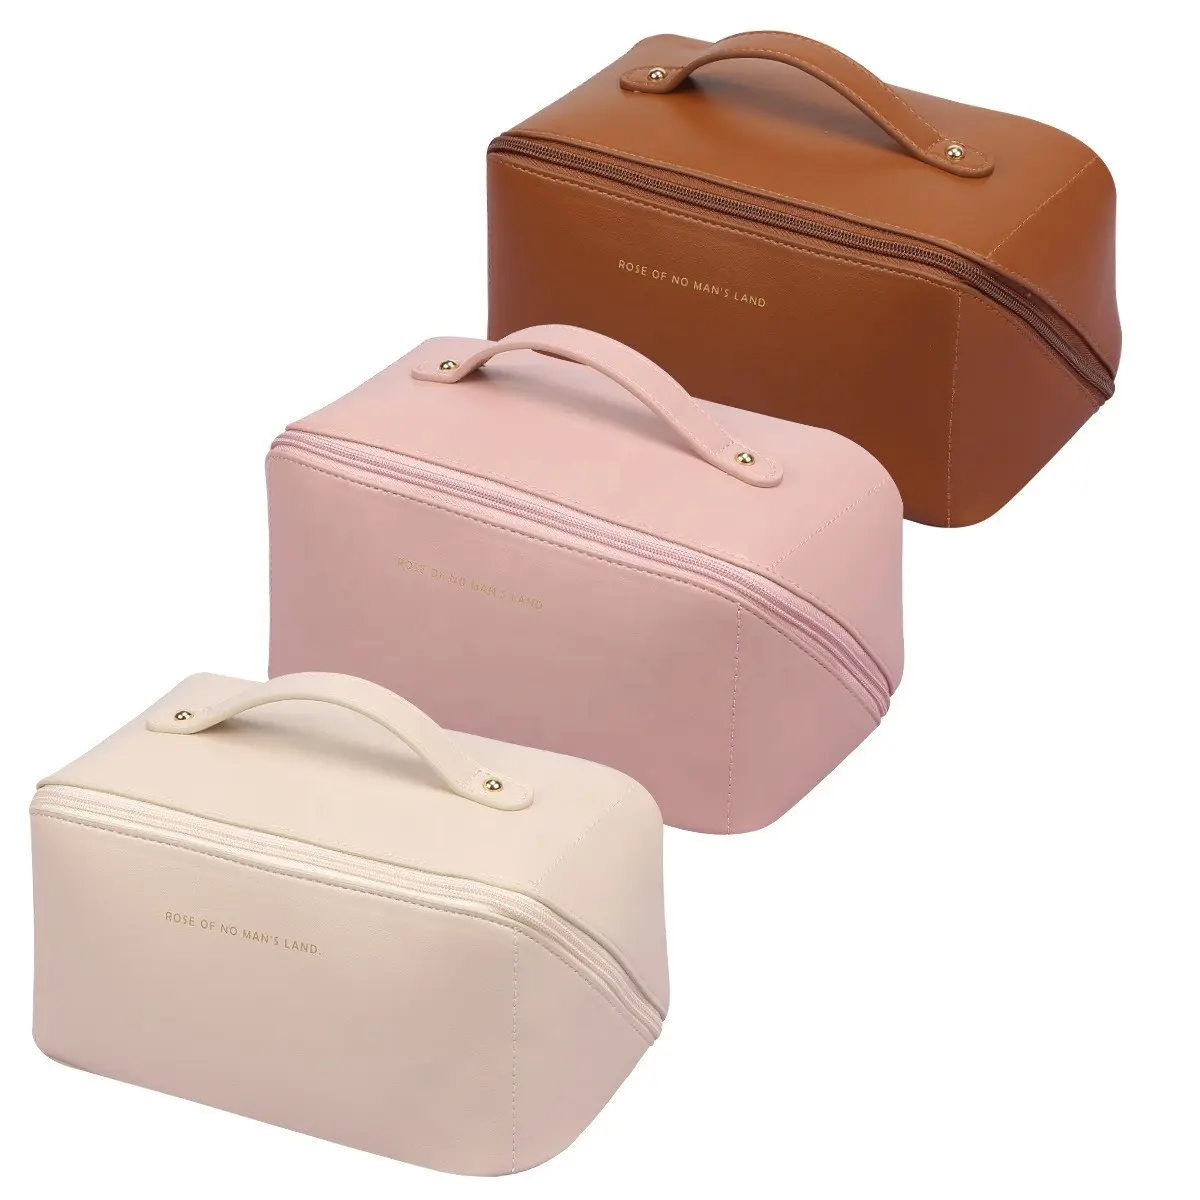 2023 kustom Label pribadi tahan air merah muda lembut Pu kulit portabel Make Up kosmetik tas rias kantong tas Travel Organizer casing